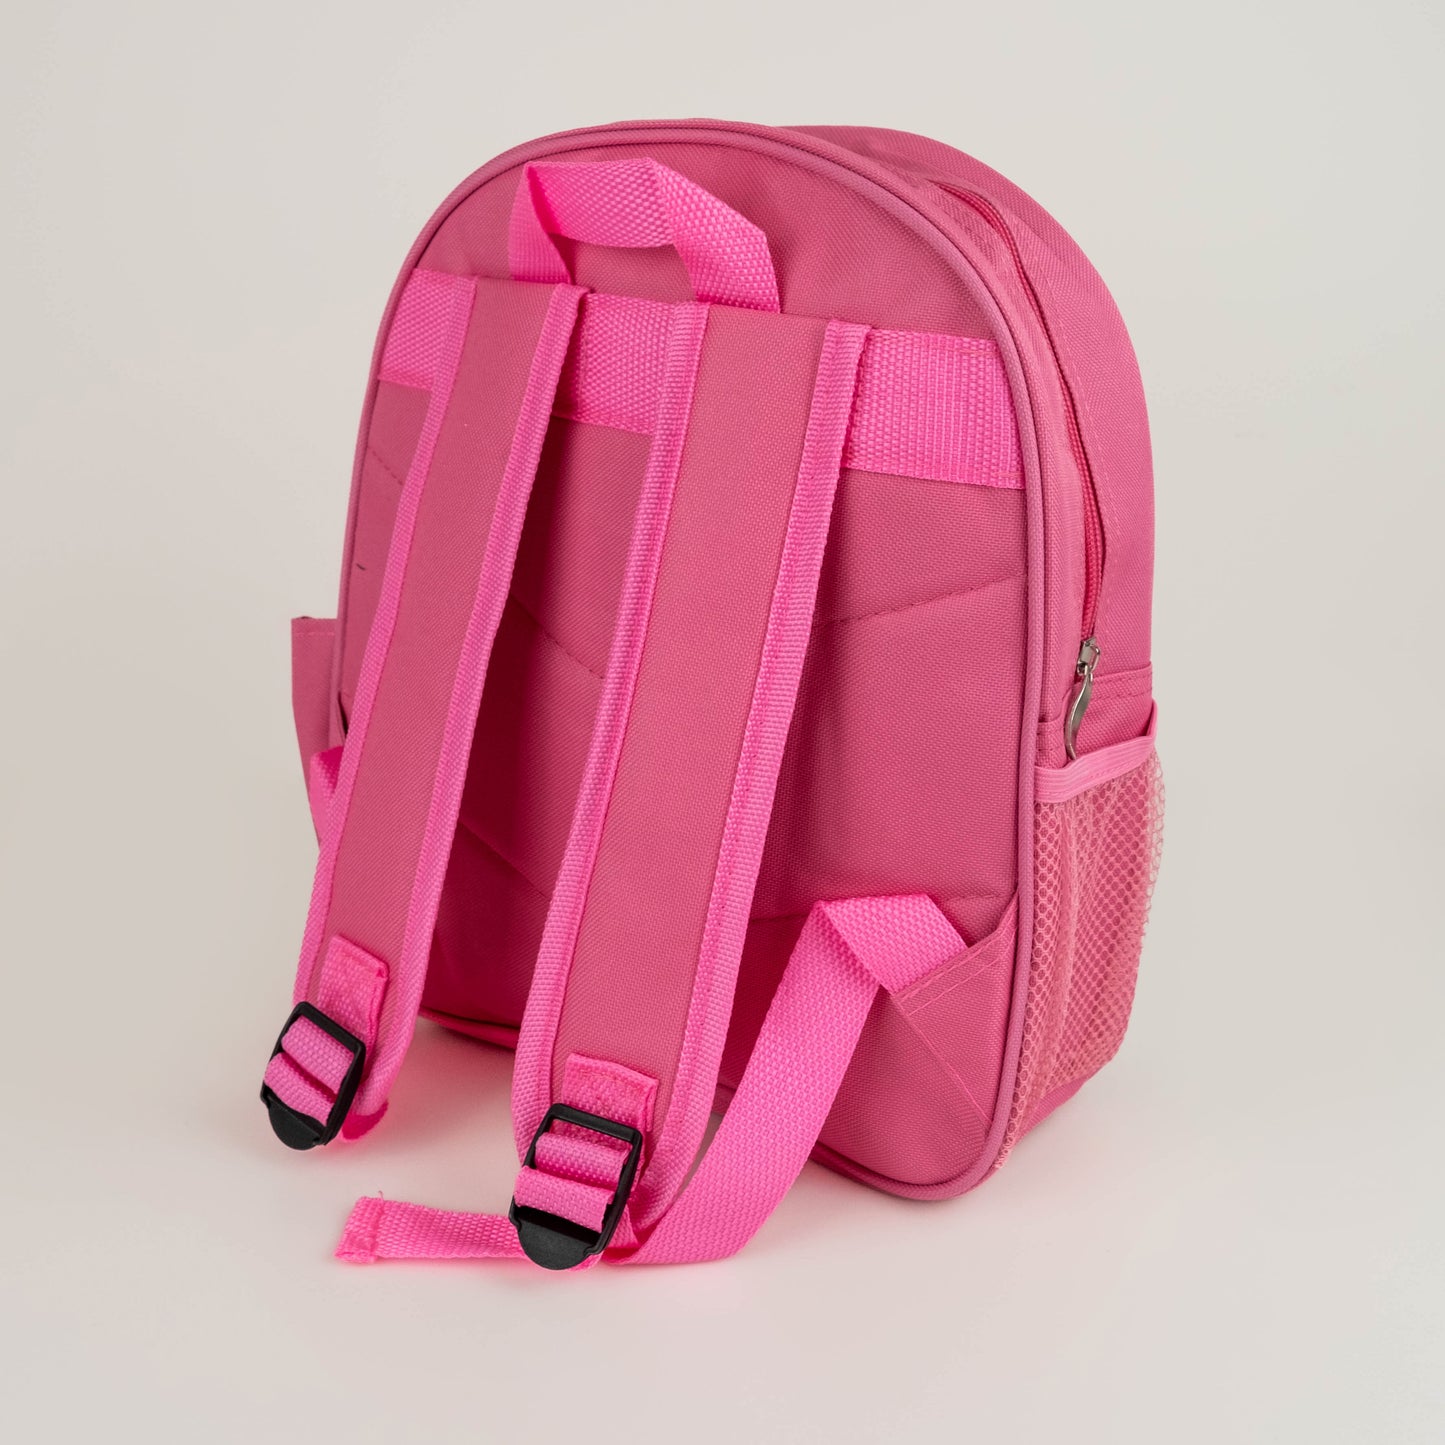 Children’s Personalised Backpack - Ballerina Design